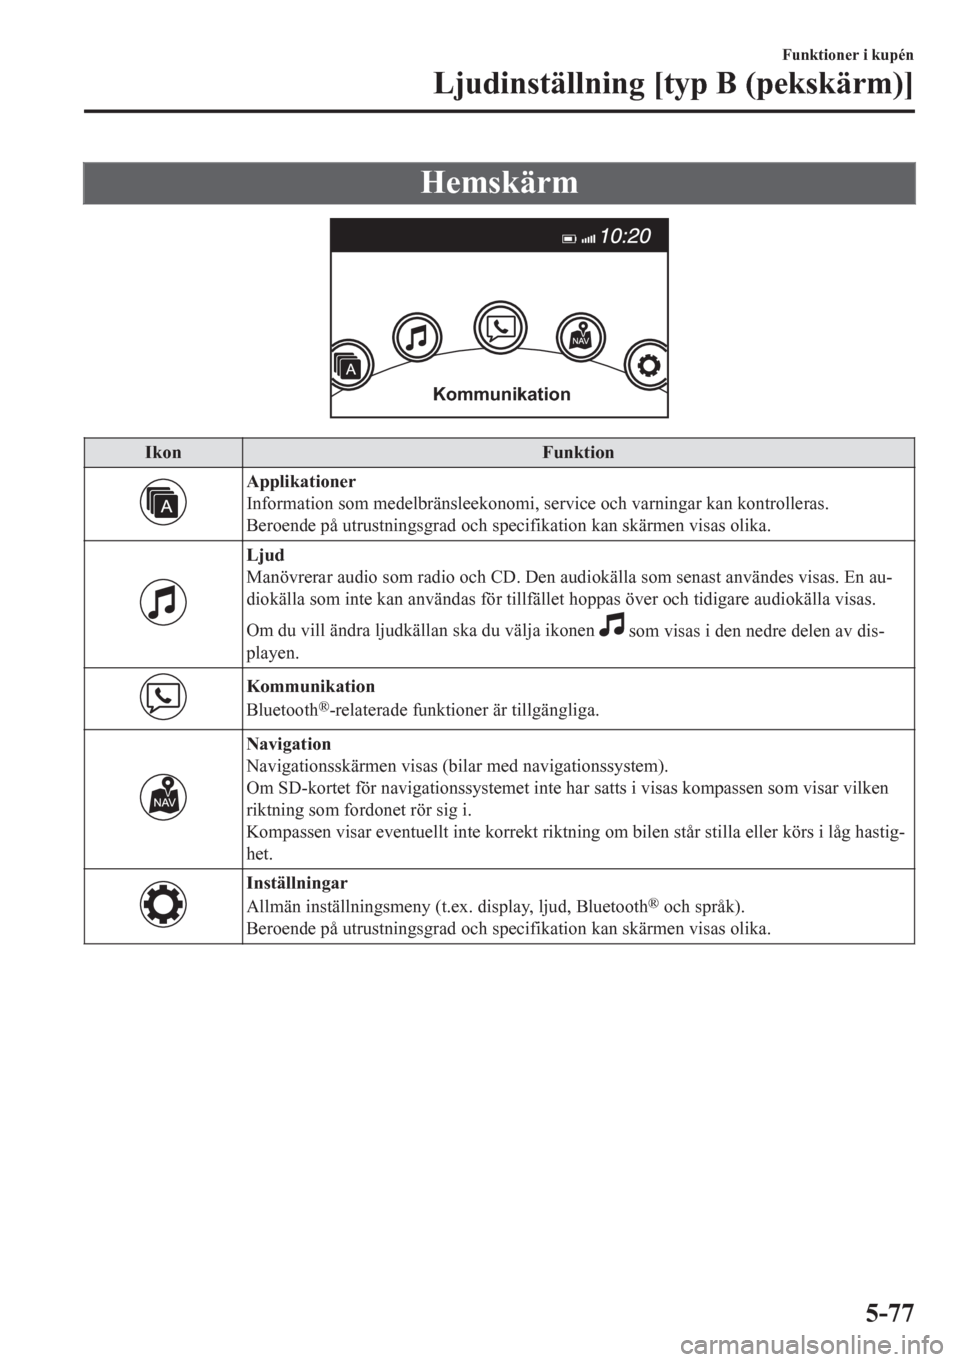 MAZDA MODEL CX-5 2018  Ägarmanual (in Swedish) Hemskärm
Kommunikation
Ikon Funktion
Applikationer
Information som medelbränsleekonomi, service och varningar kan kontrolleras.
Beroende på utrustningsgrad och specifikation kan skärmen visas olik